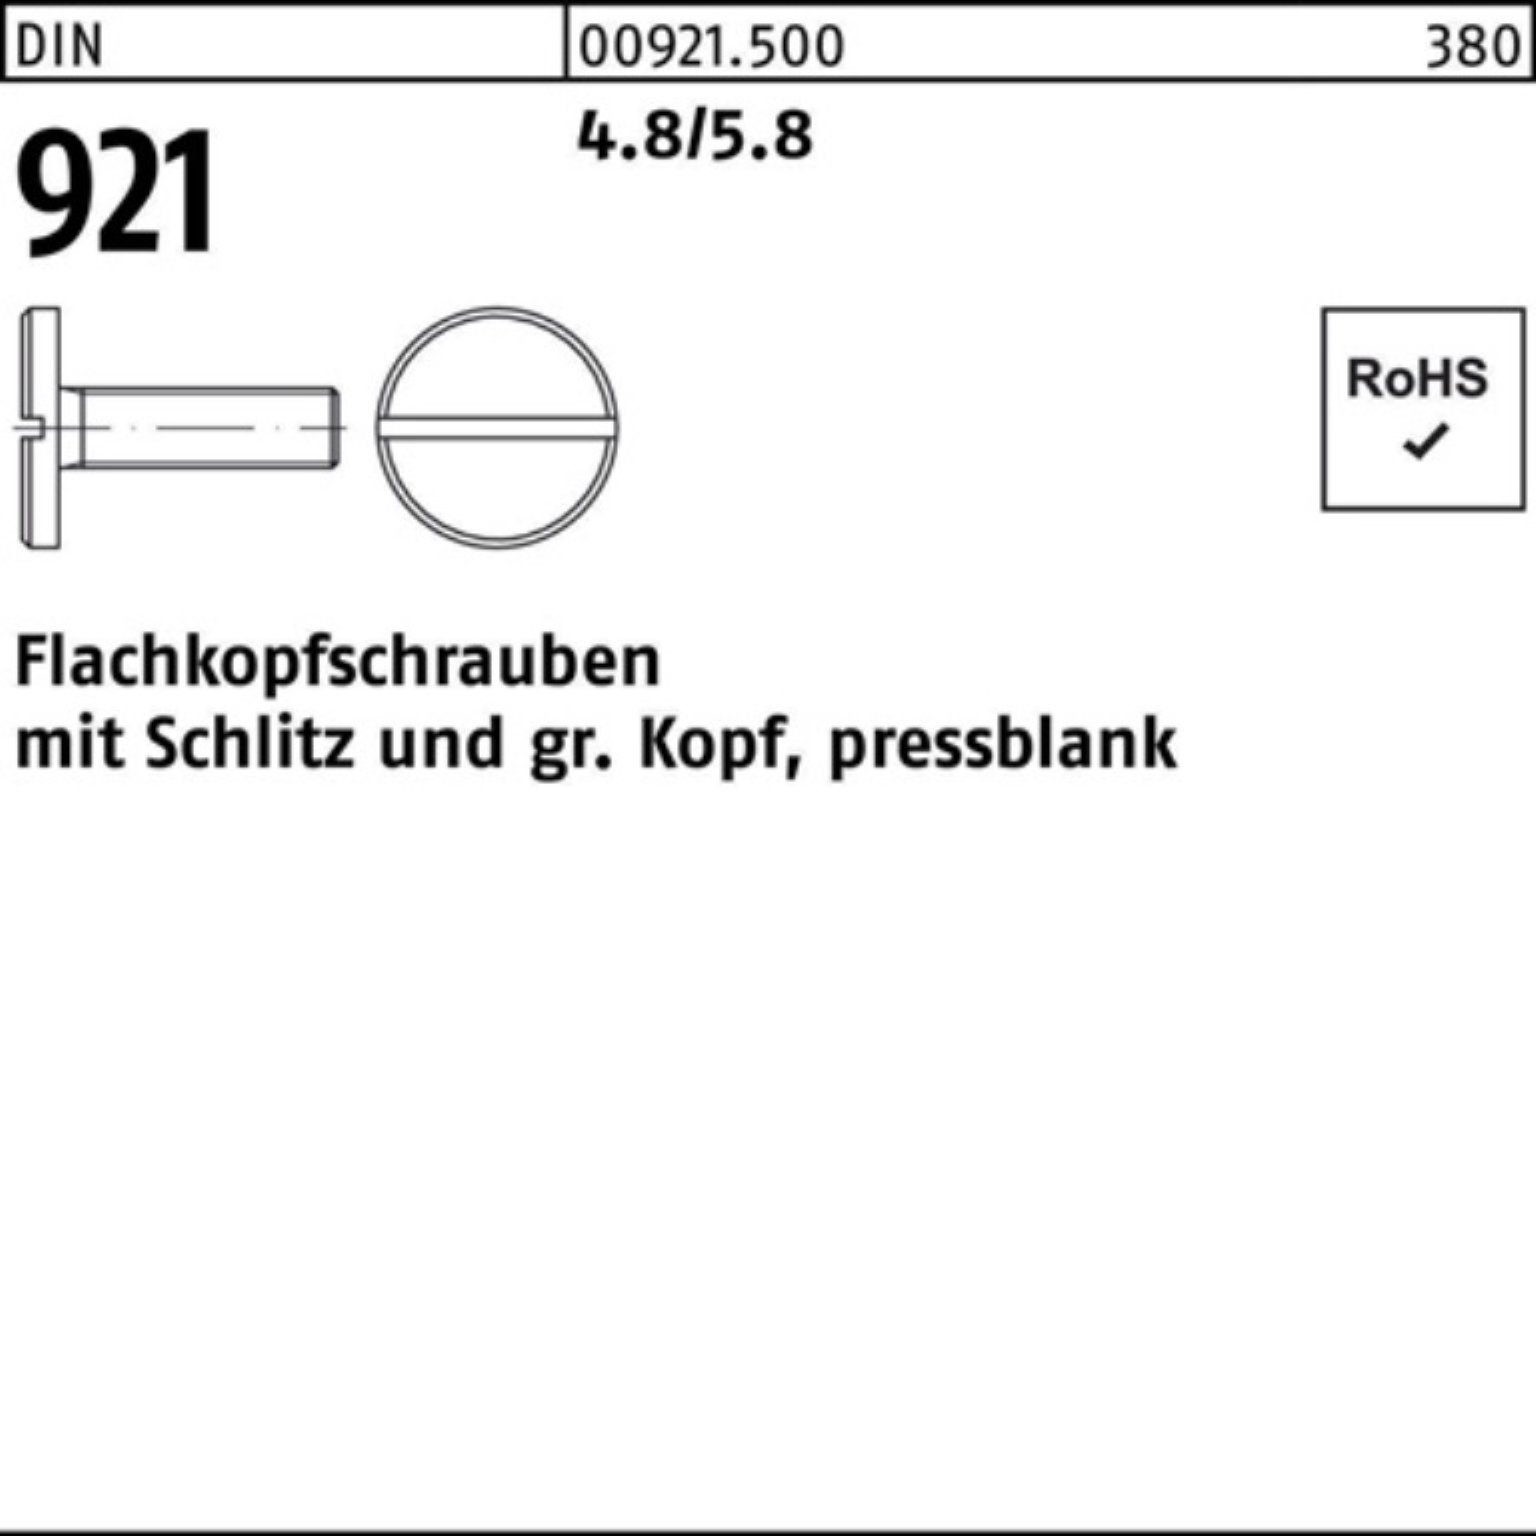 Reyher Schraube 100er Pack Flachkopfschraube DIN 921 Schlitz M3x 8 4.8/5.8 100 Stück